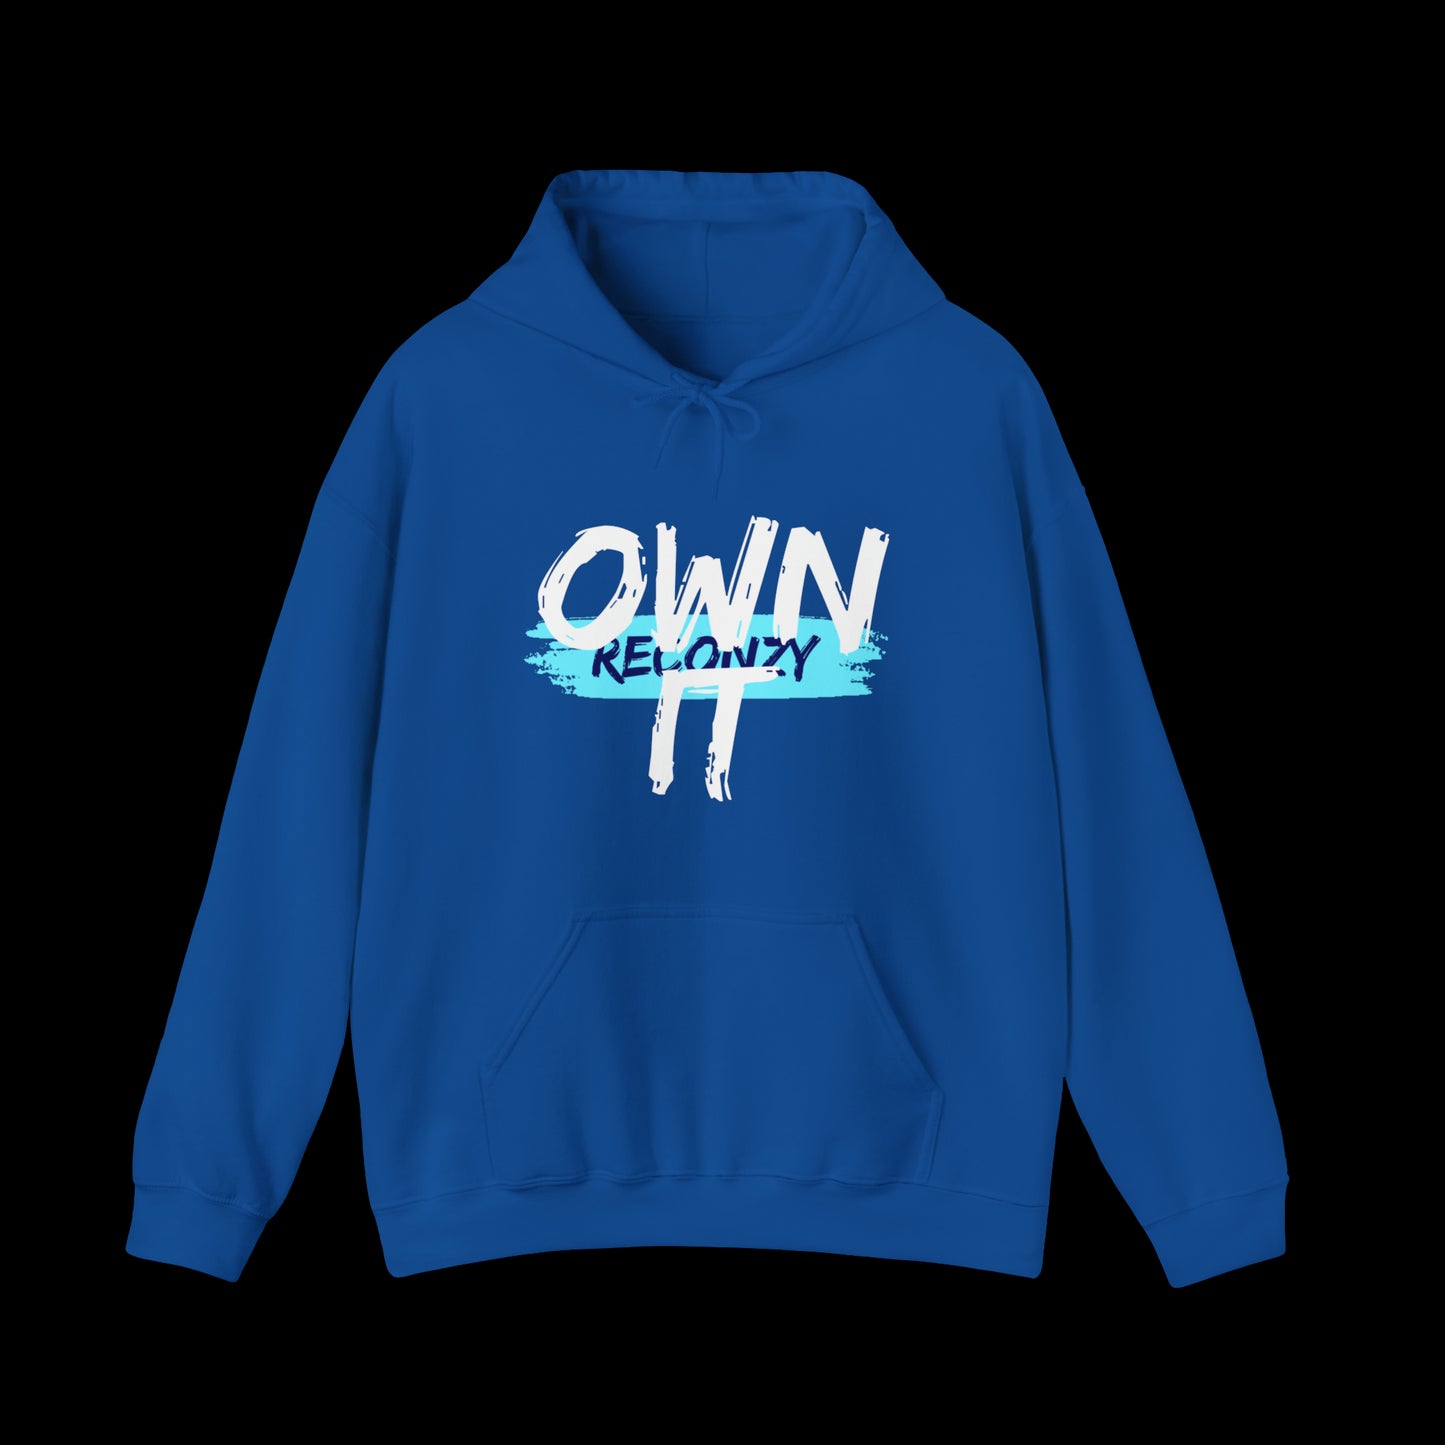 Own It - Hoodie Blue